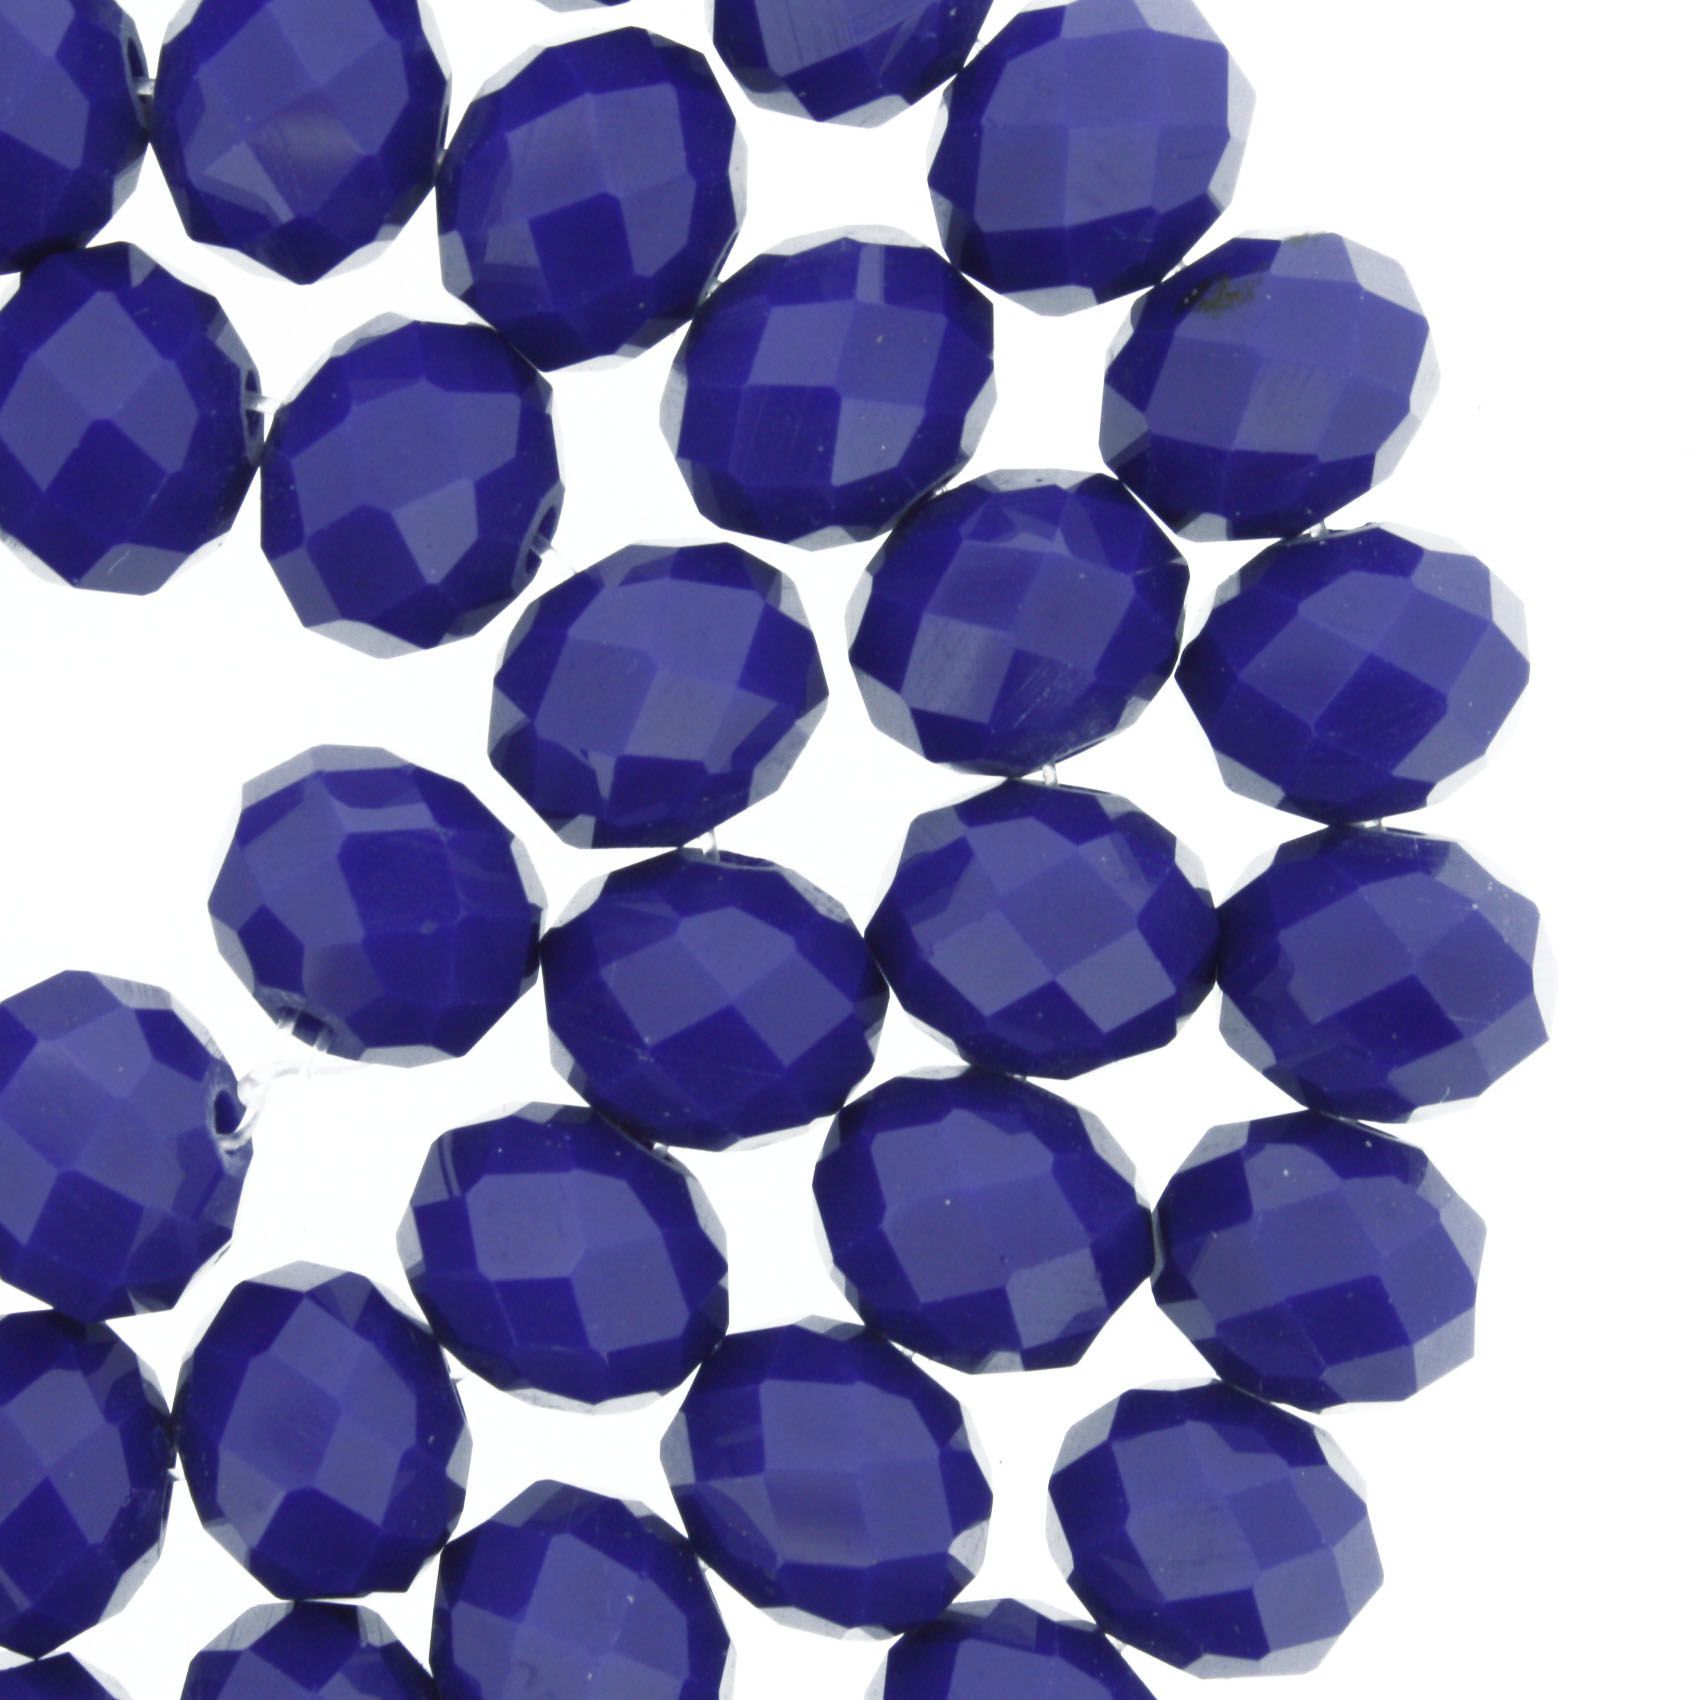 Fio de Cristal - Flat® - Azul Royal - 10mm - Stéphanie Bijoux® - Peças para Bijuterias e Artesanato